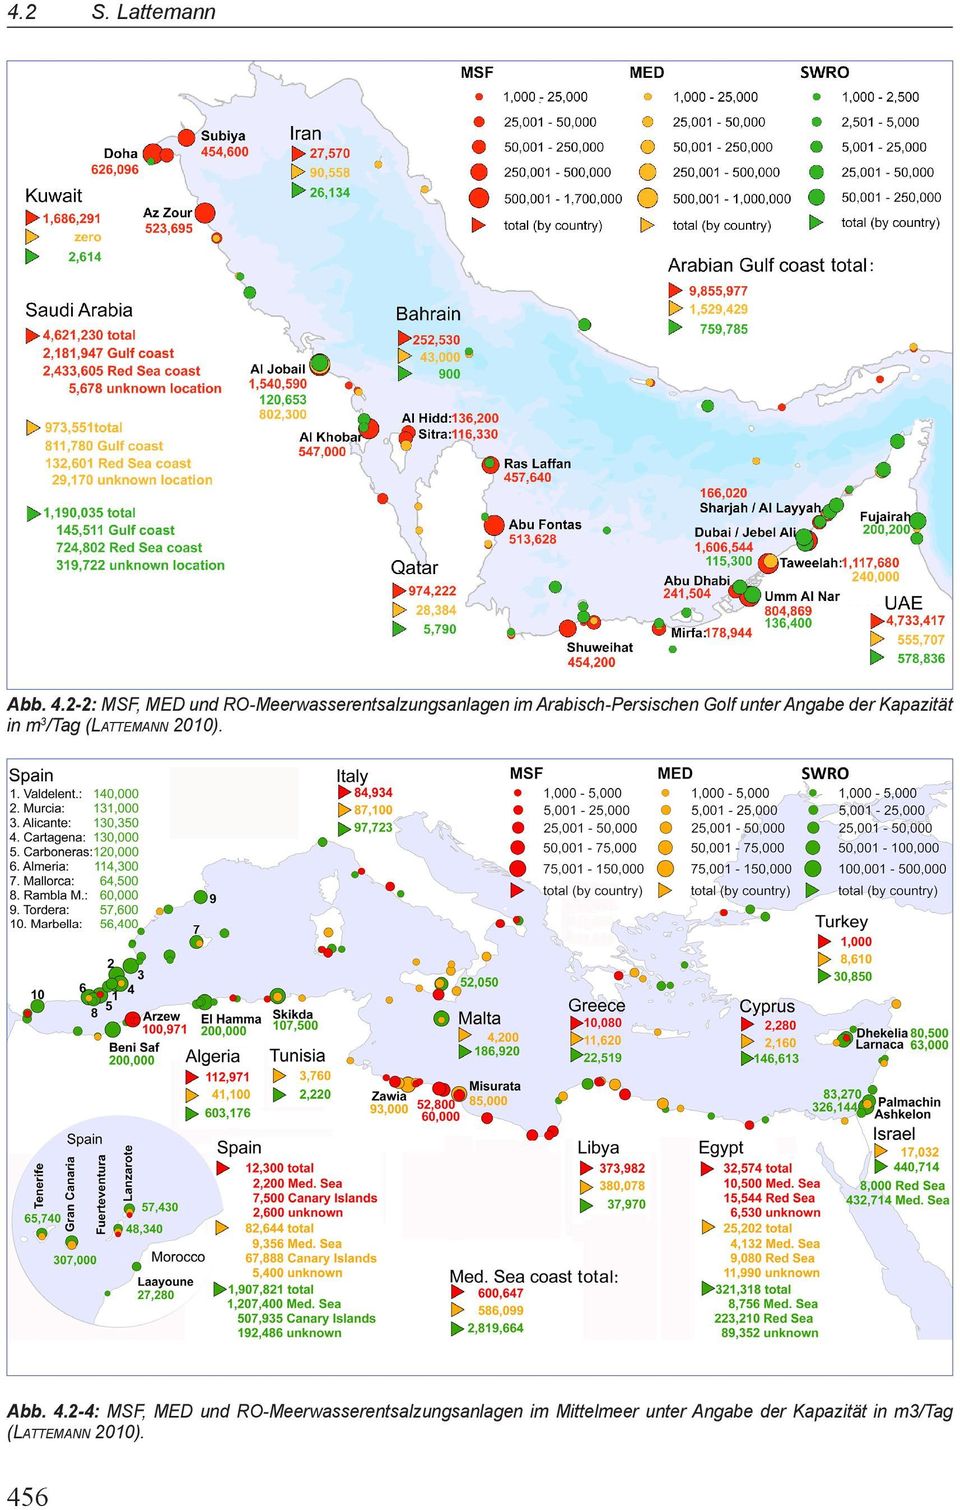 Arabisch-Persischen Golf unter Angabe der Kapazität in m3/tag